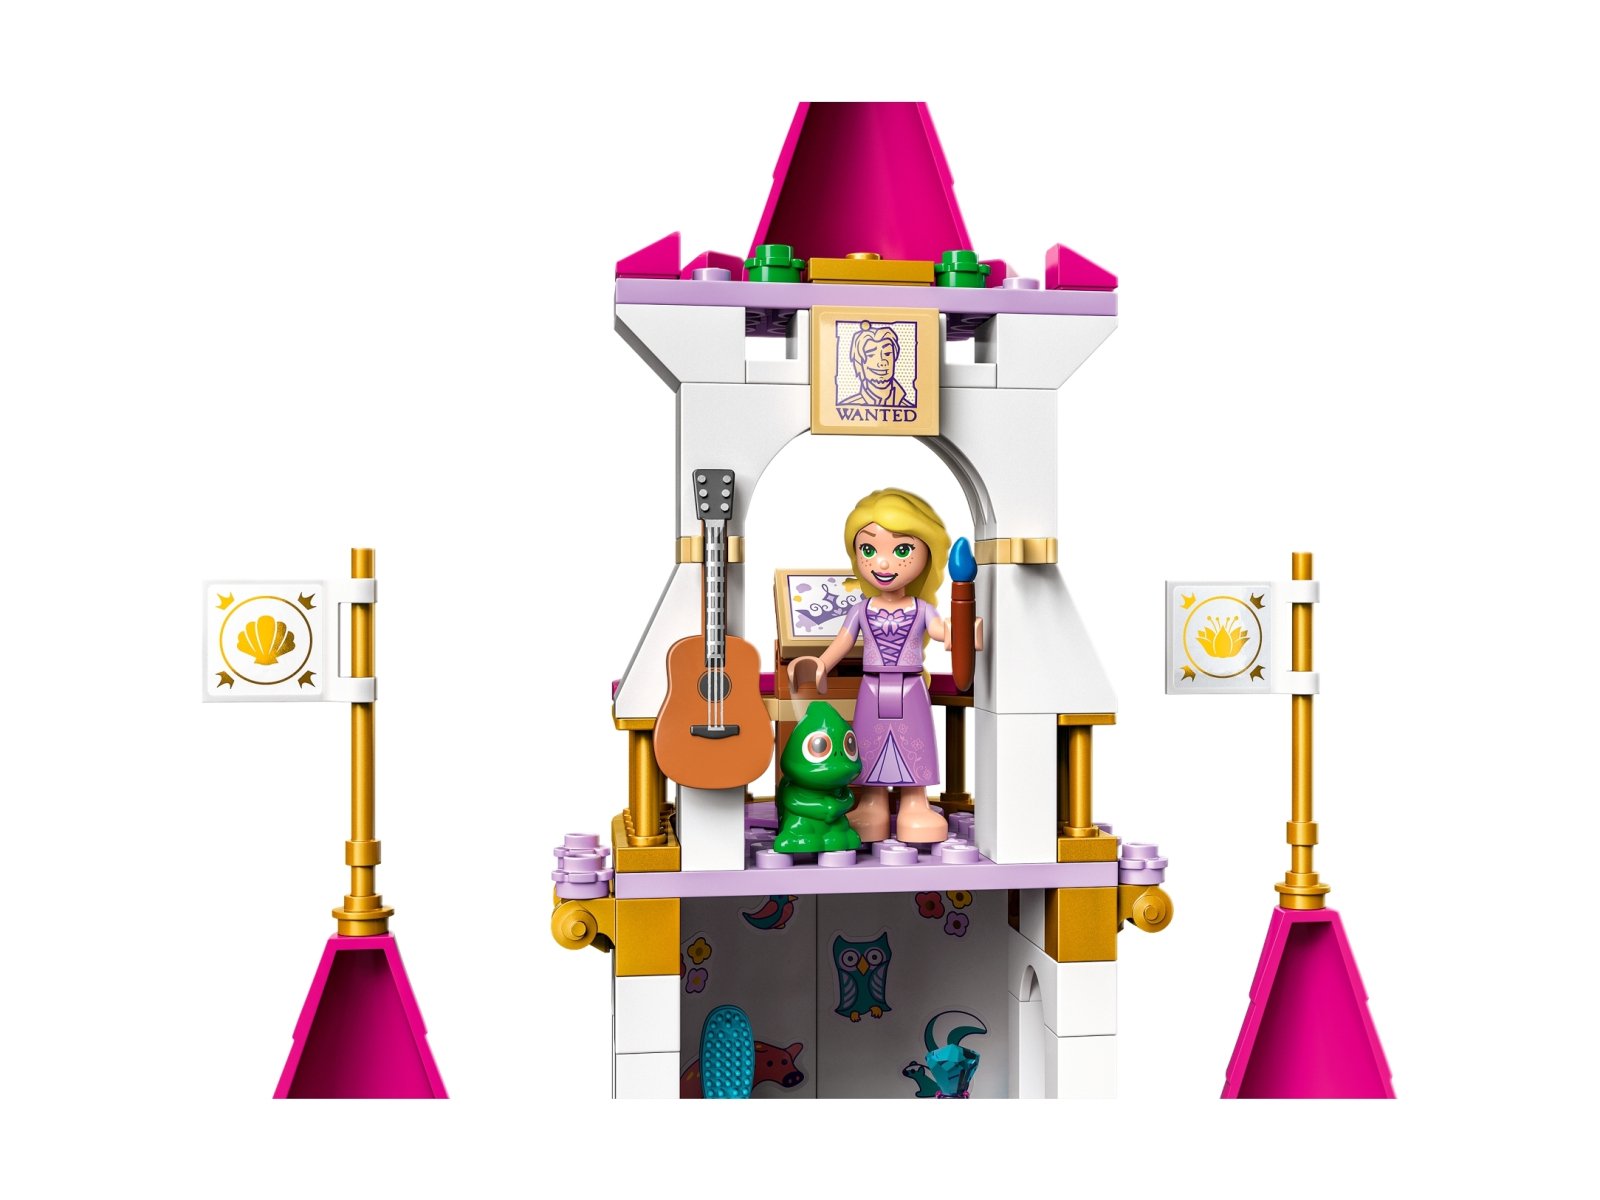 LEGO Disney Zamek wspaniałych przygód 43205